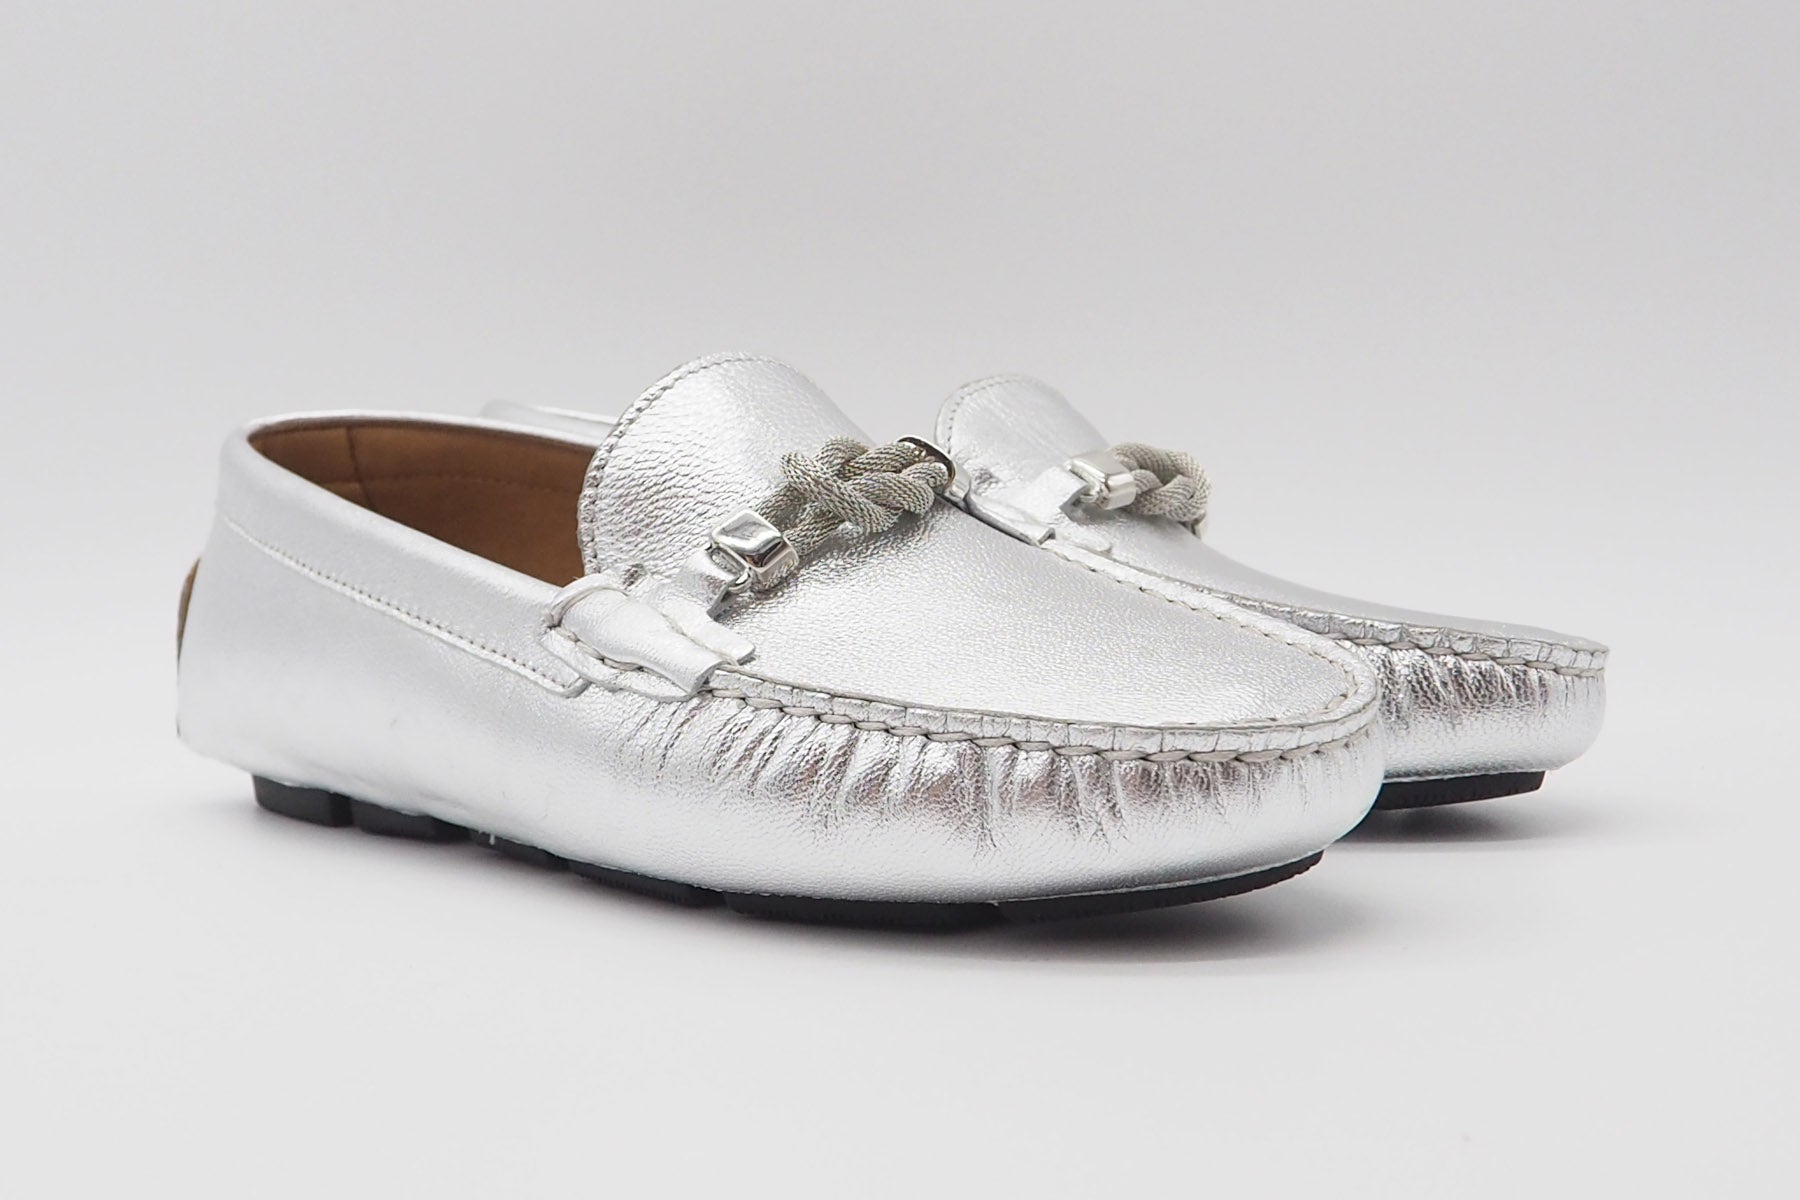 Damen Loafer aus Metsllicleder in Silber mit silberner Schnalle & partieller Gummisohle Damen Loafers & Schnürer Conte V